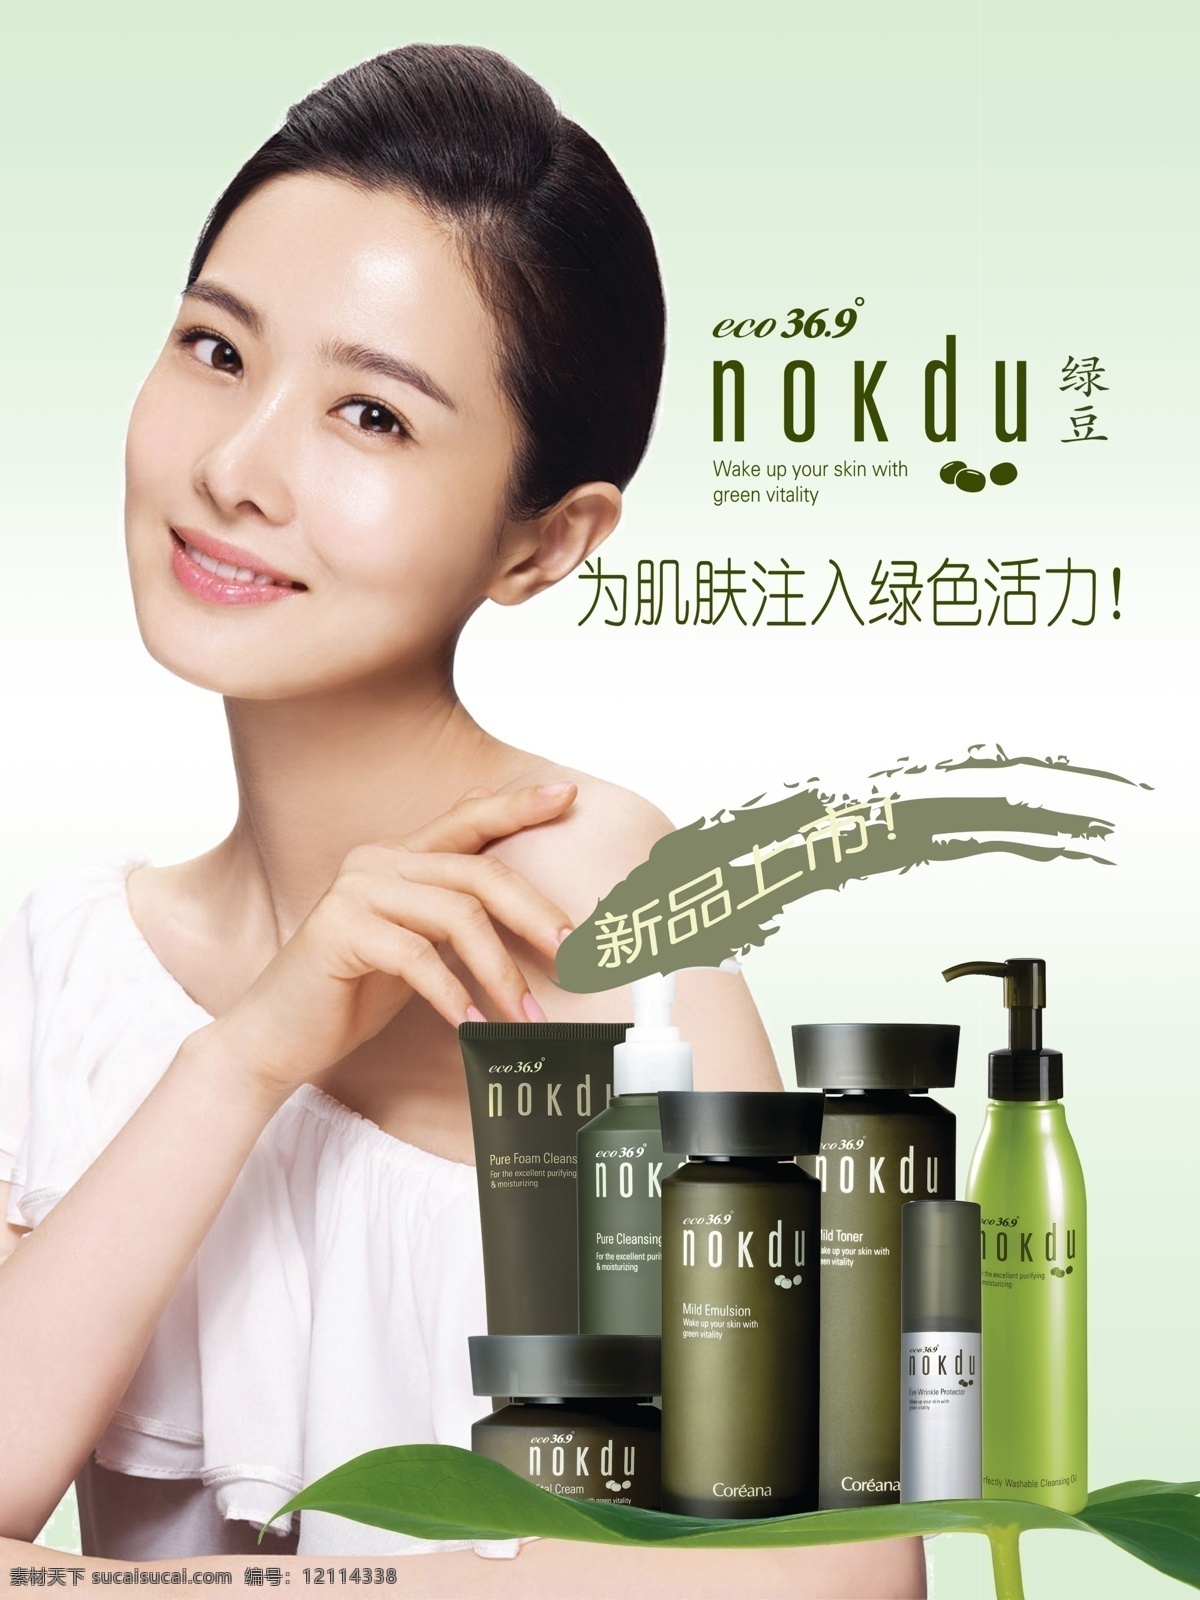 高丽 雅 娜 绿豆 系列 海报 高丽雅娜 珂芮雅娜 韩国 化妆品 护肤 绿色 绿叶 瓶子 新品上市 肌肤 代言人 活力 形象 广告设计模板 源文件